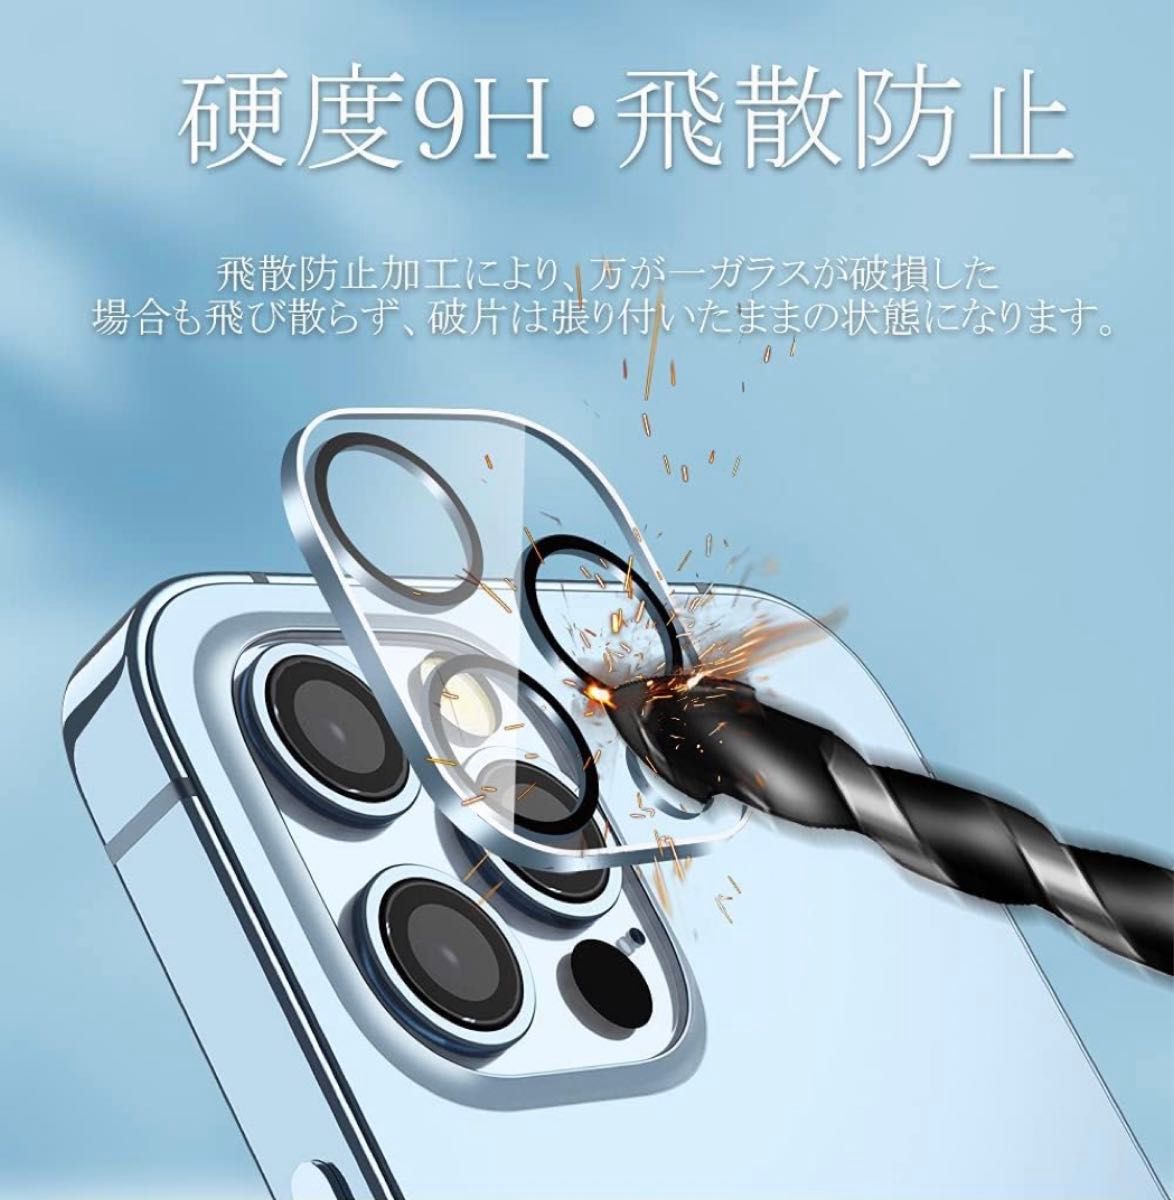 iPhone13 Pro / 13 Pro Max 用 カメラフィルム レンズ保護カバー 化ガラス 3枚セットクリア